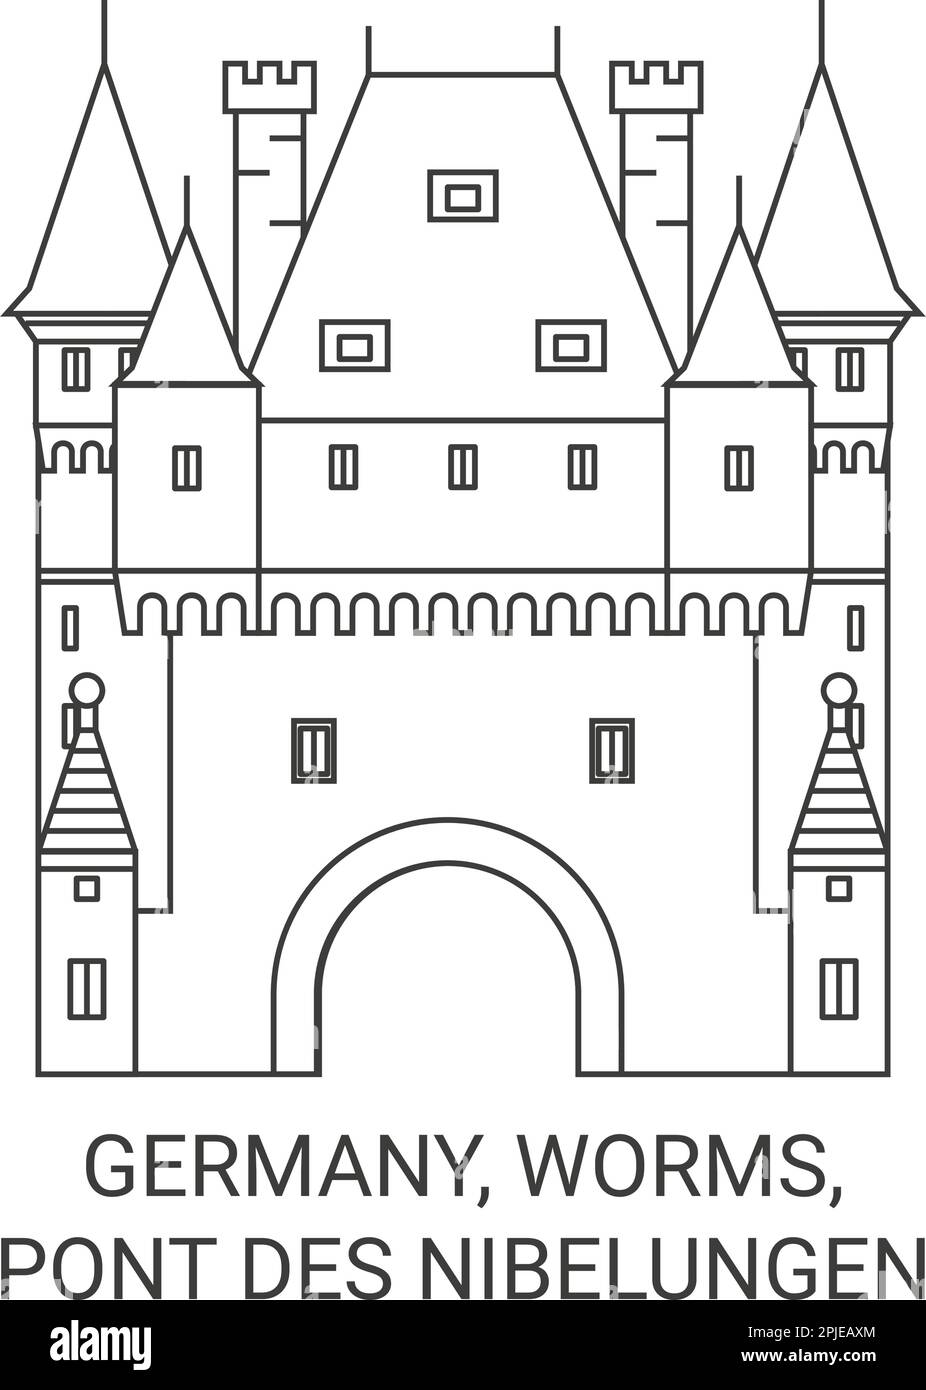 Deutschland, Worms, Pont des Nibelungen reisen als Vektordarstellung Stock Vektor